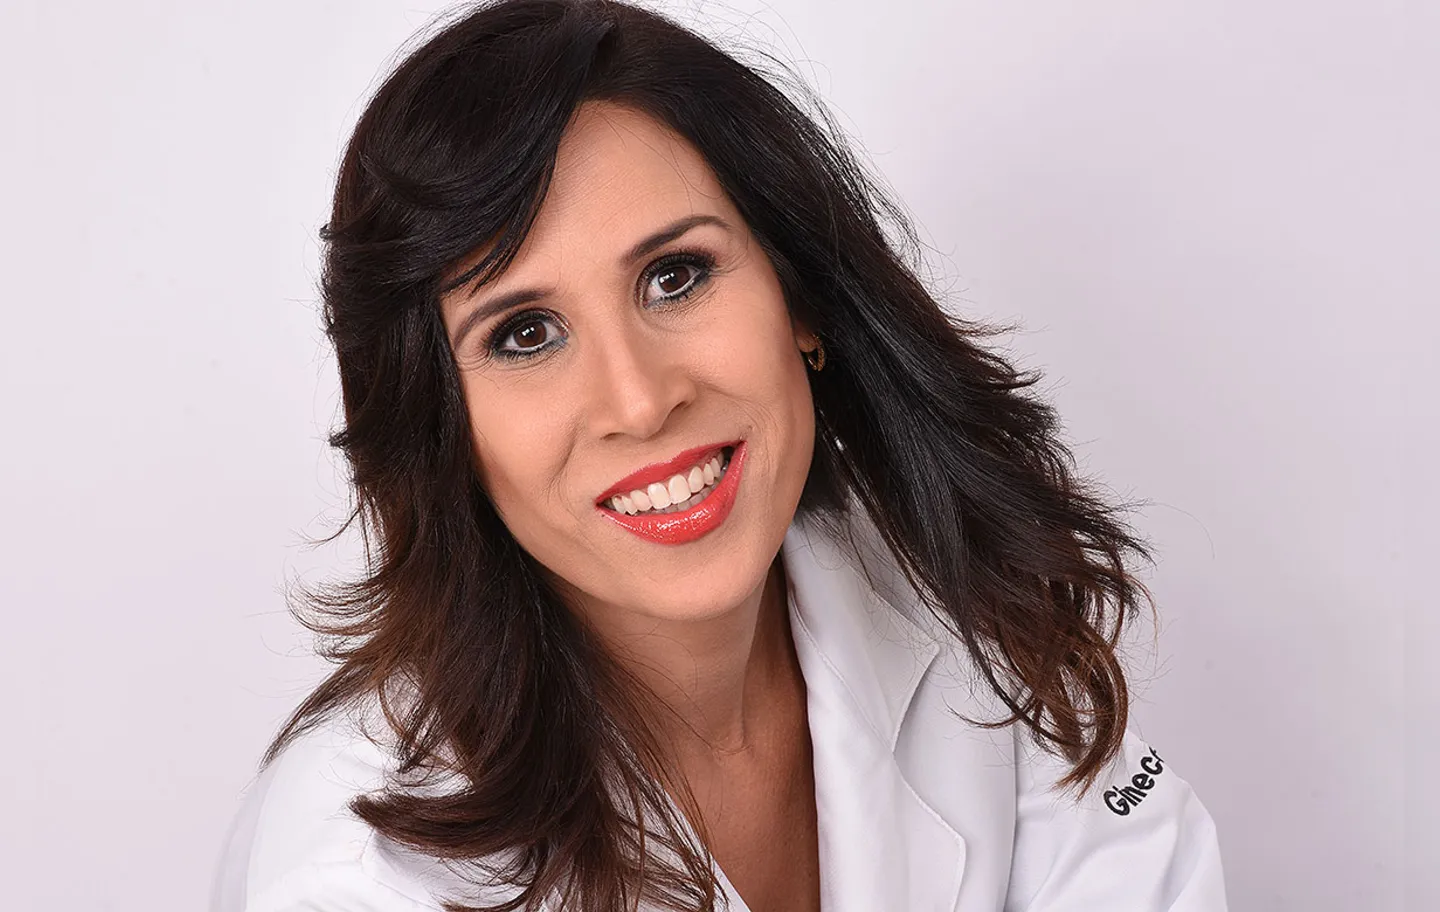 Ginecologista Janaína Freitas diz que avaliação deve ser individual | Foto: Divulgação